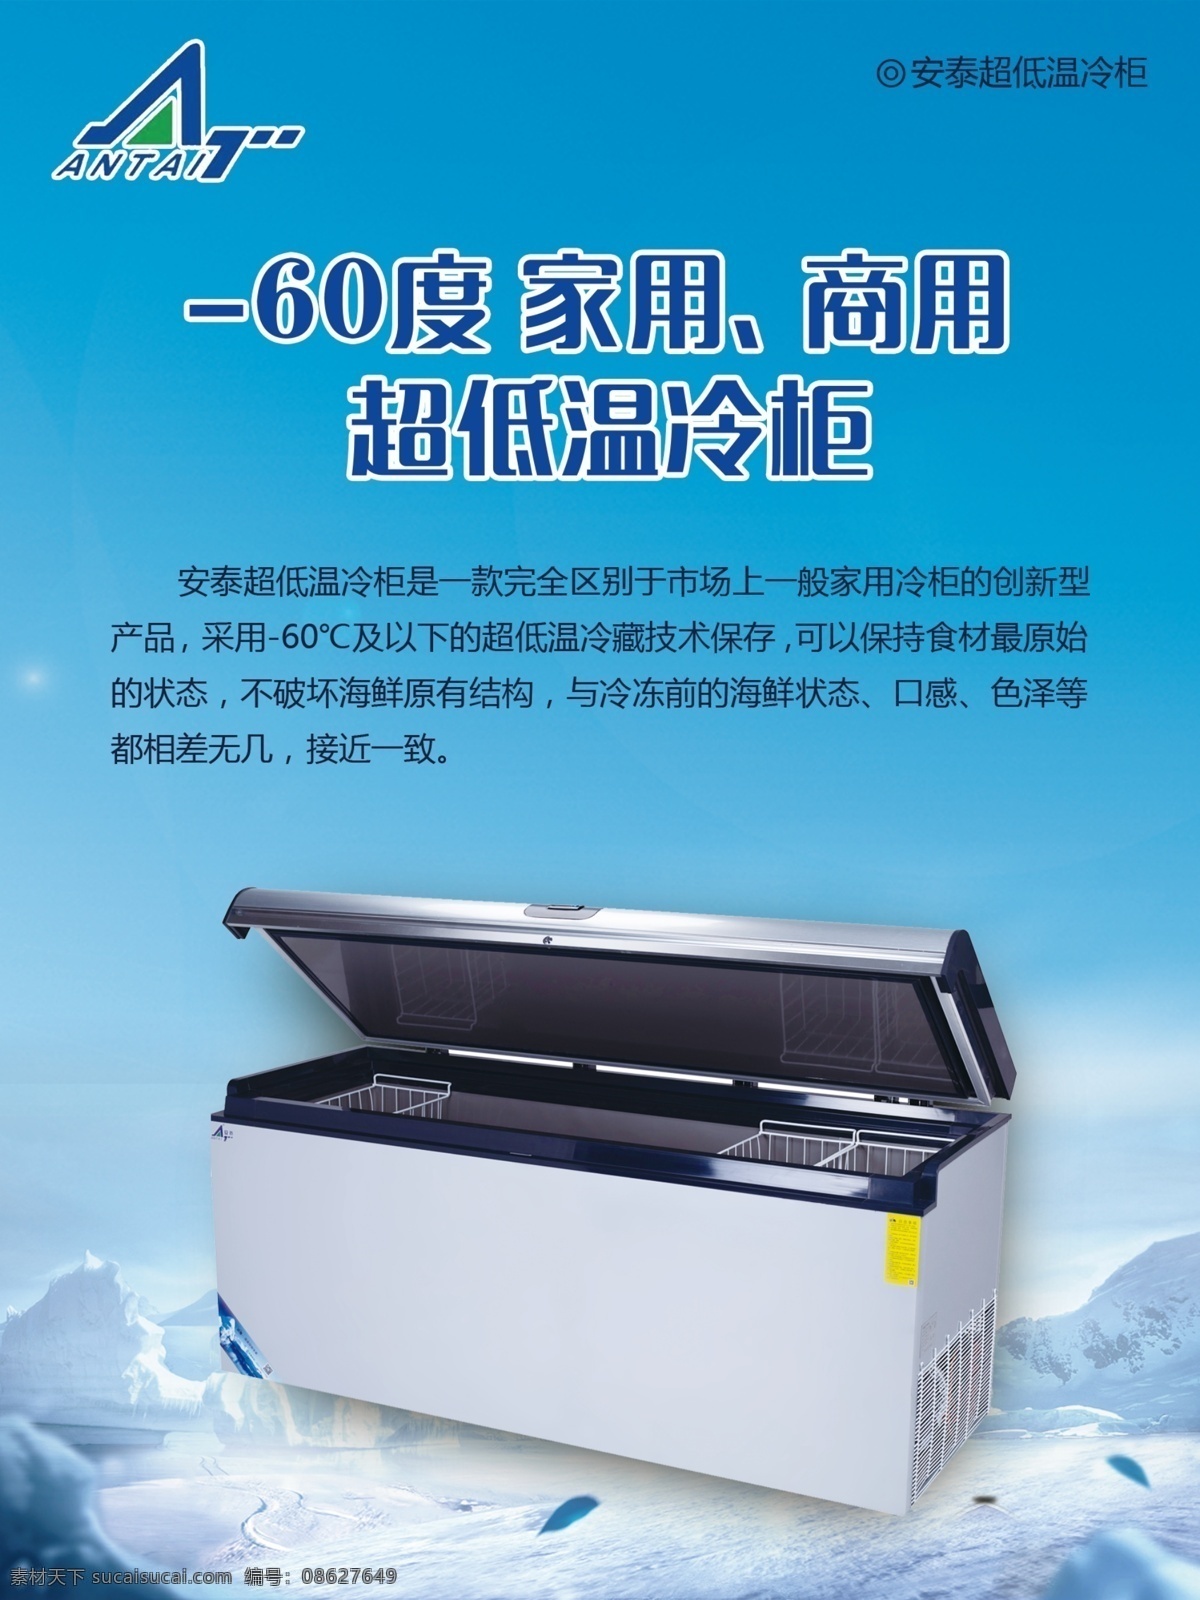 电器海报 冷柜宣传 冰柜宣传 地球 发射地球 全球 区域 蓝色背景